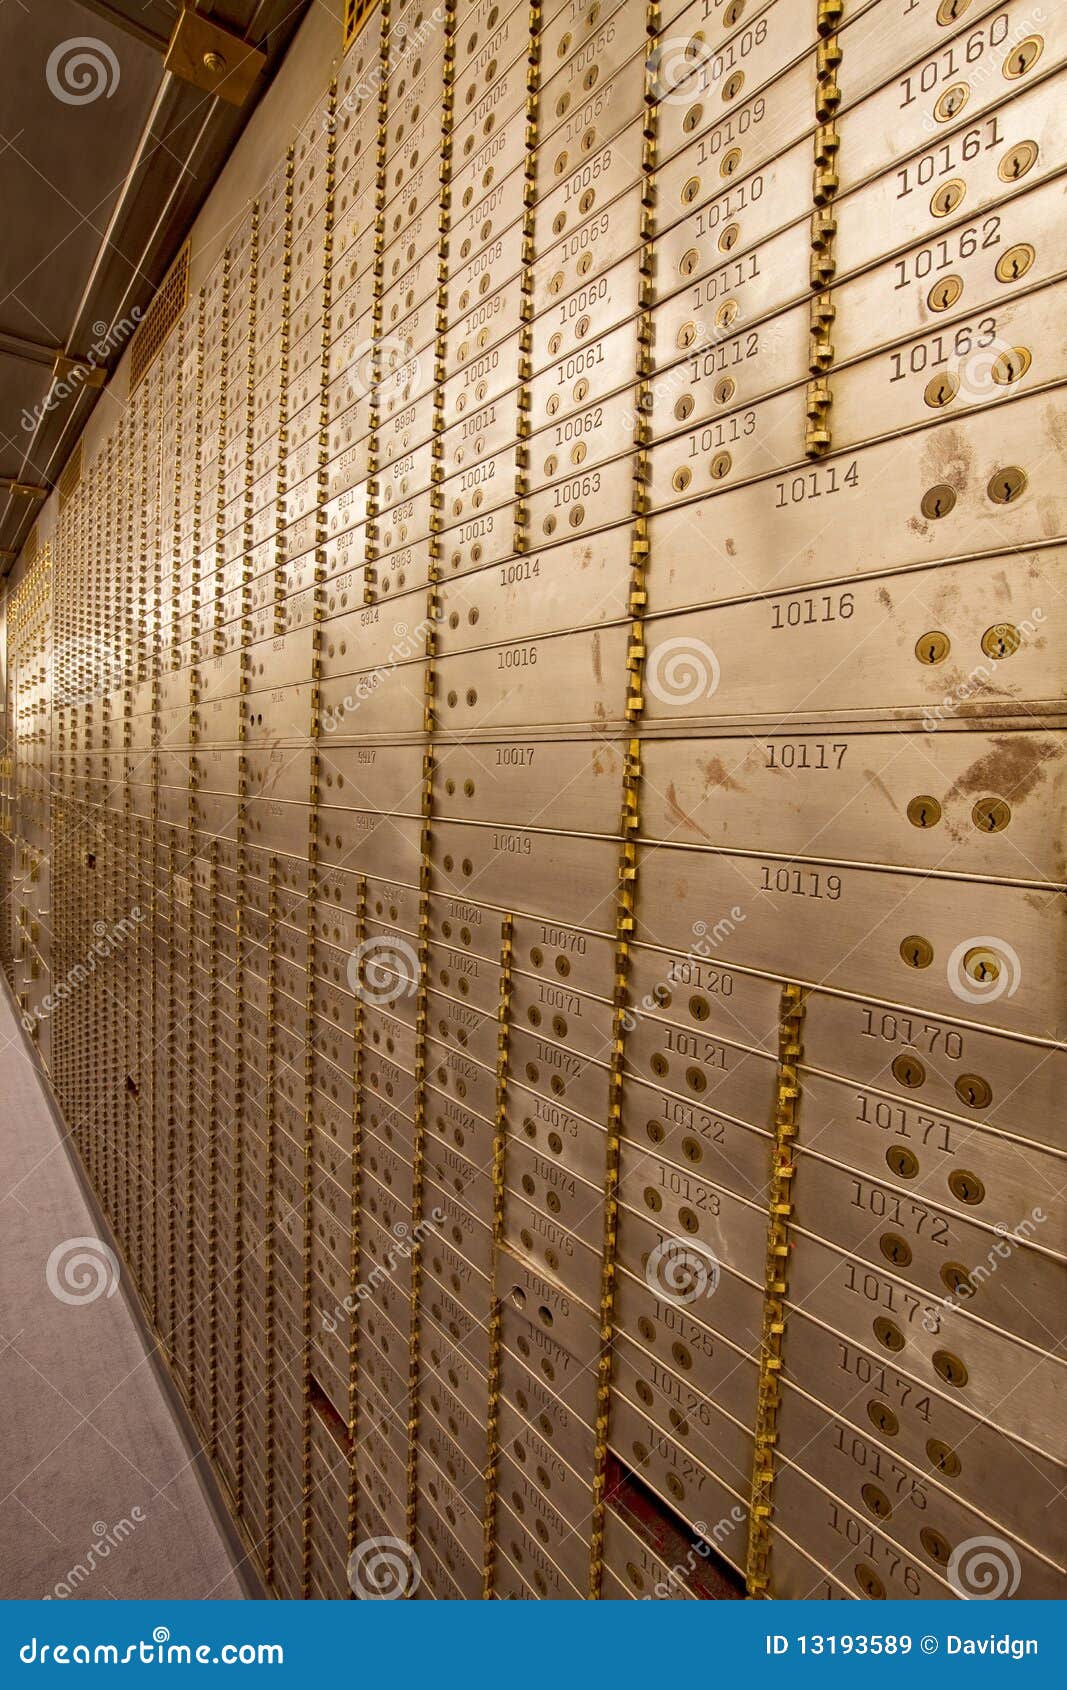 bank safe deposit boxes